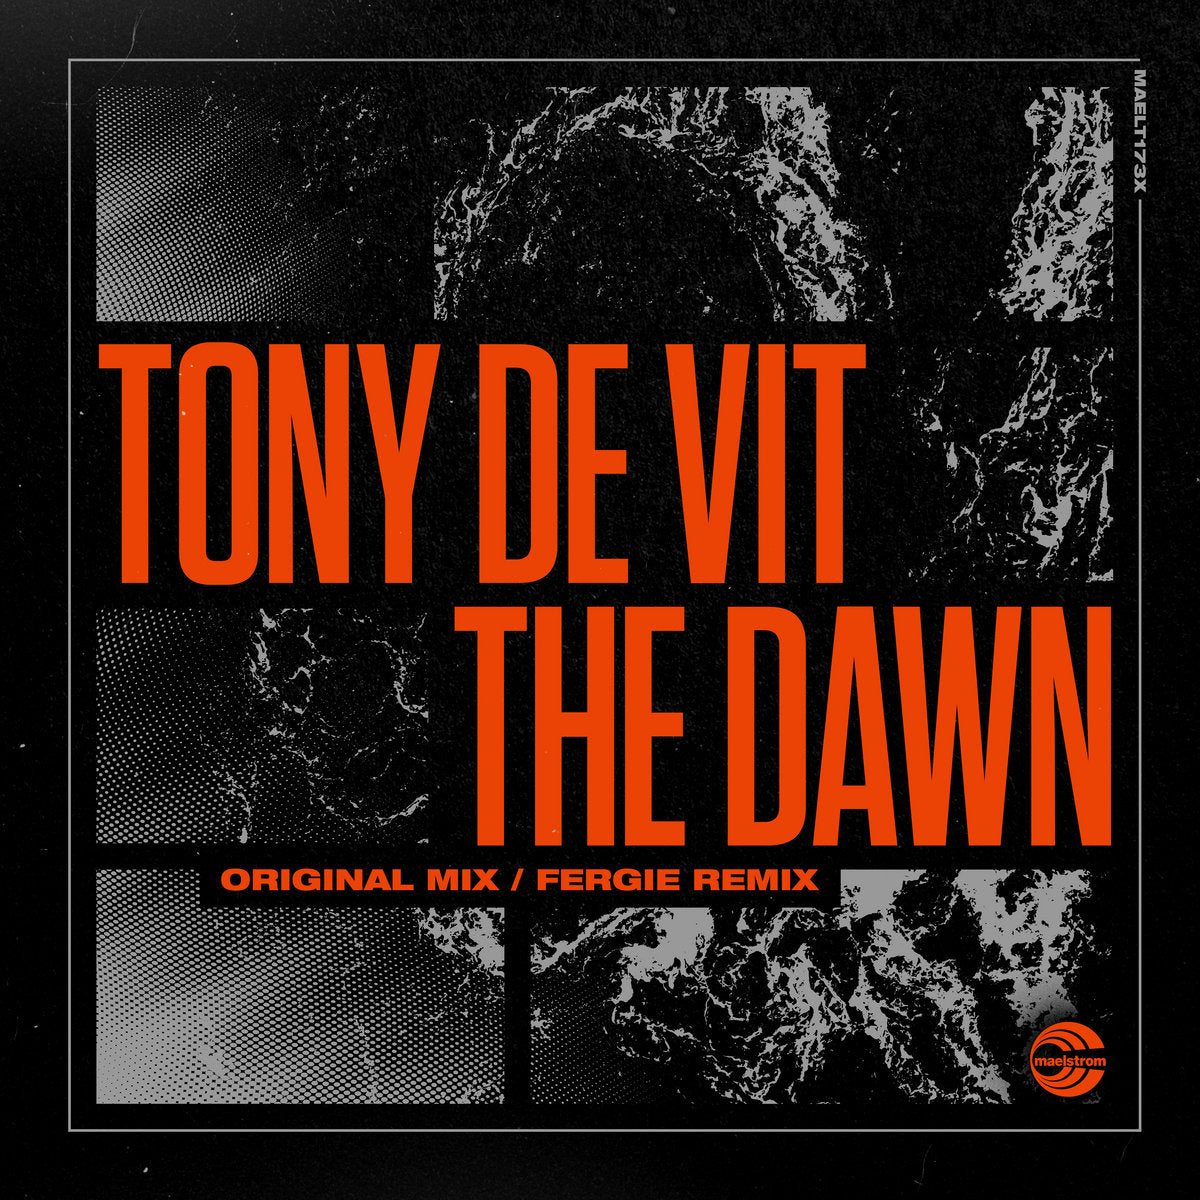 Tony De Vit - The Dawn (Original mix / Fergie Remix)